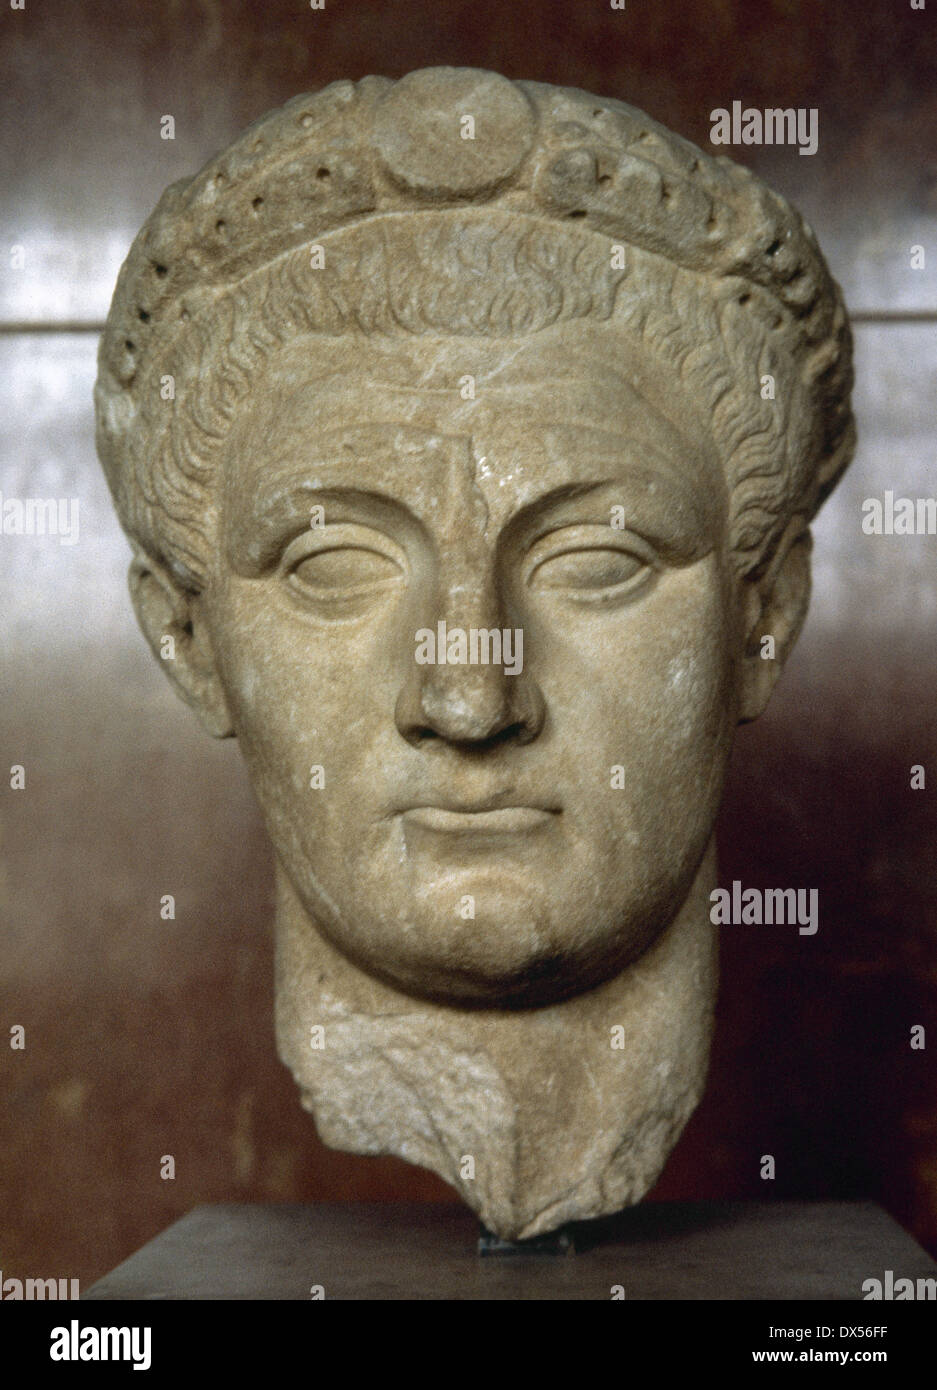 Claudius (10 v. Chr. - 54 n. Chr.). Römischer Kaiser. Julio-Claudia, Dynastie. Idealisierte Büste. Marmor. Von Thassos. Louvre-Museum. Paris. Stockfoto